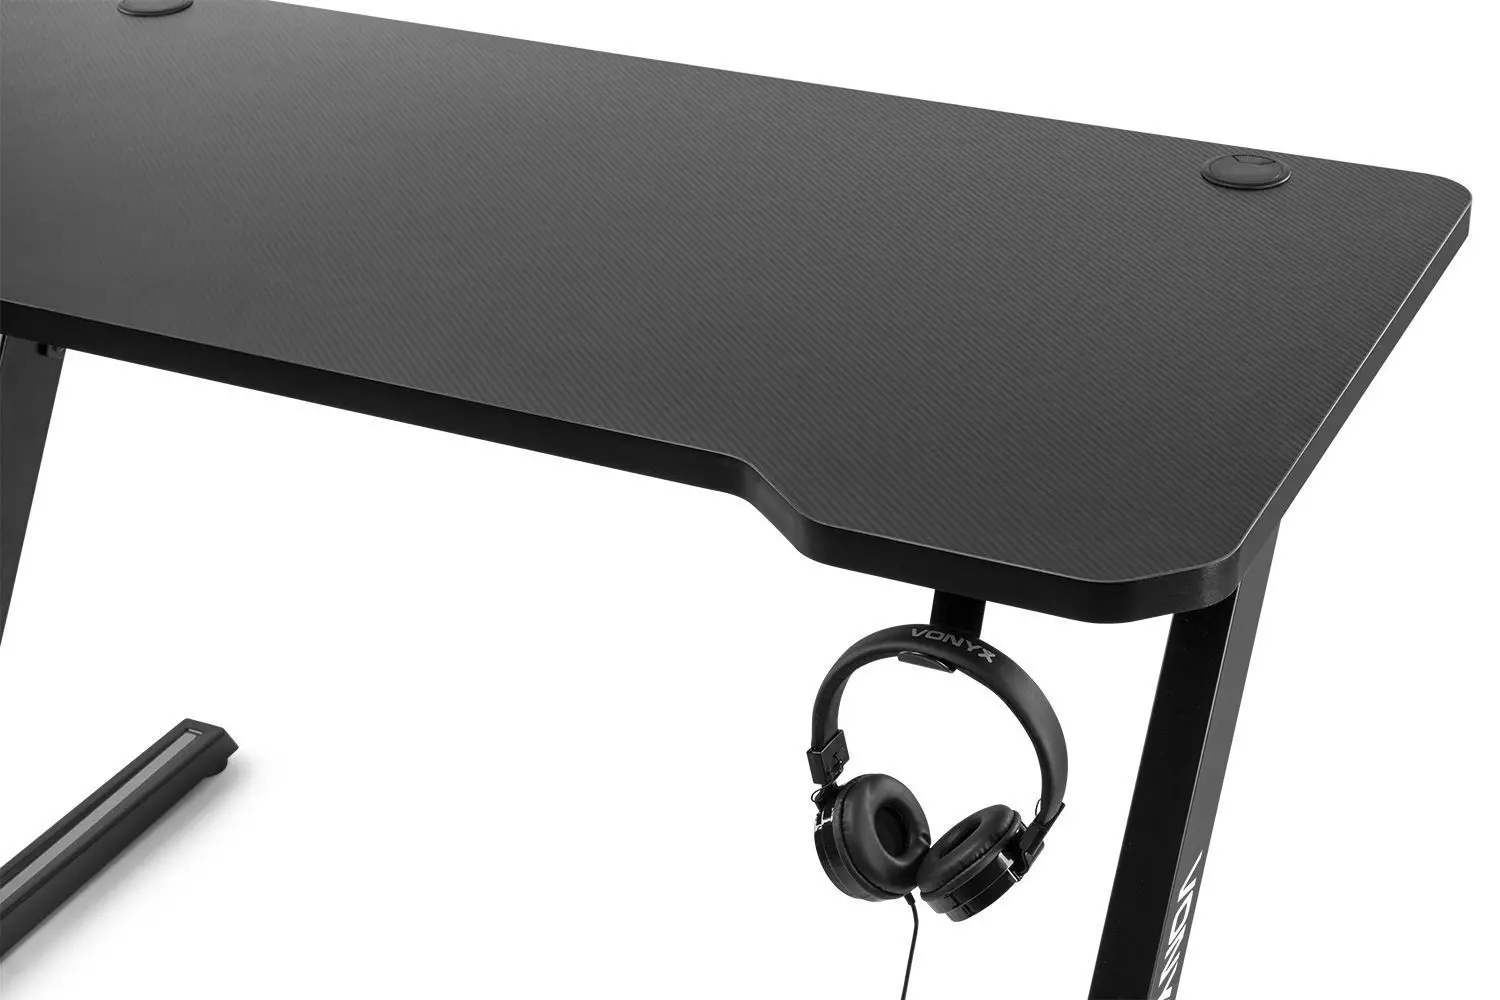 Vonyx db15 gaming bureau met anti slip en kraslaag 120cm zwart 2